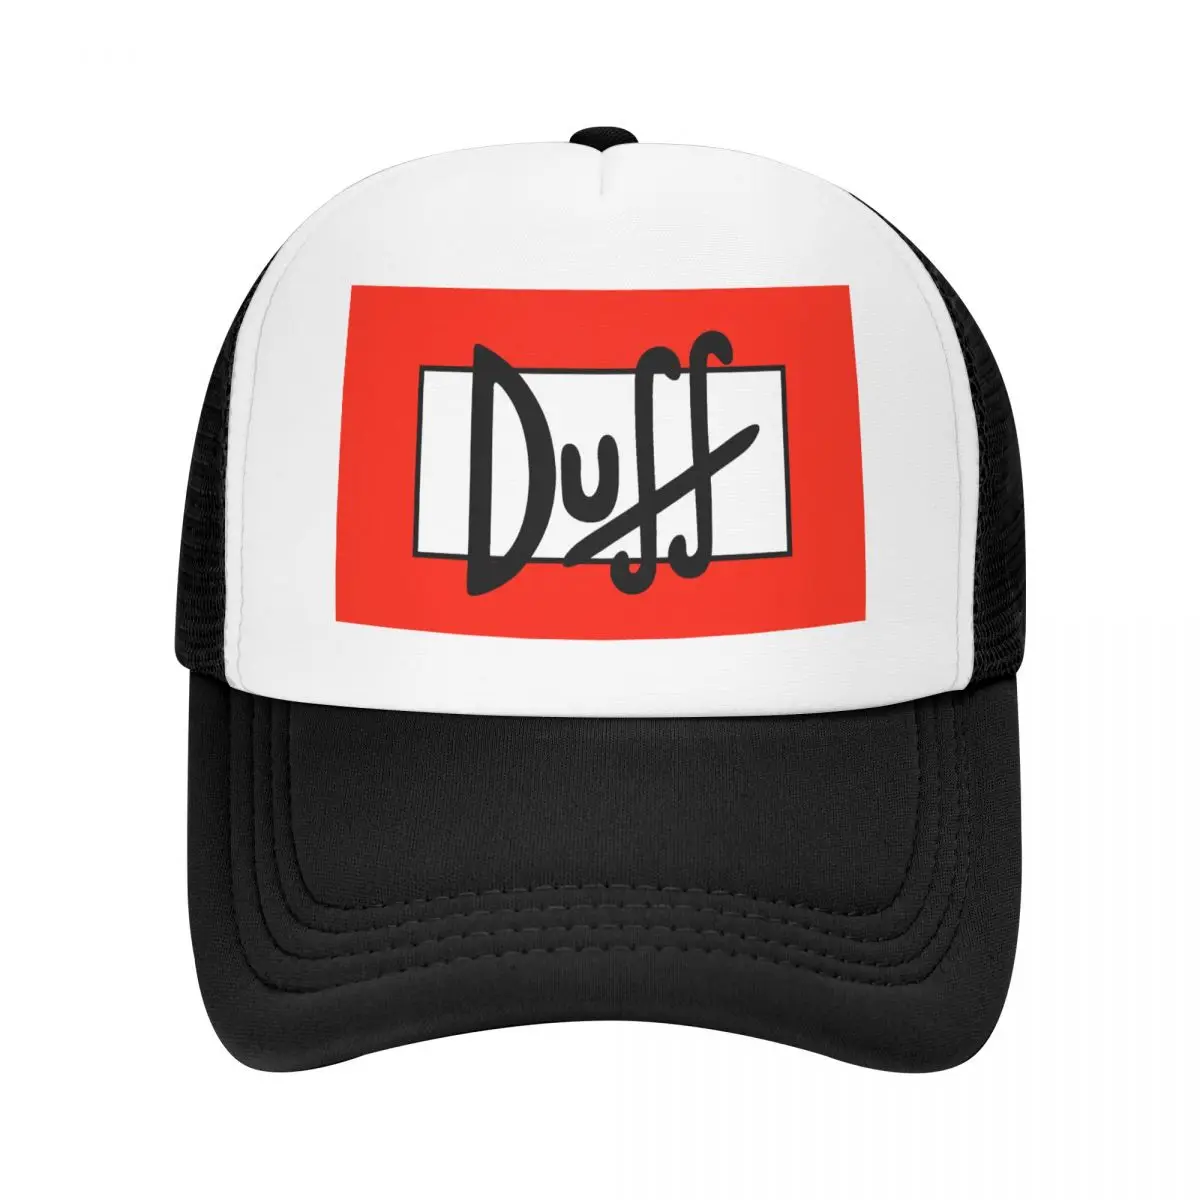 

Custom Duff Beer Baseball Cap Outdoor Men Women's Adjustable Trucker Hat Summer Hats Snapback Caps